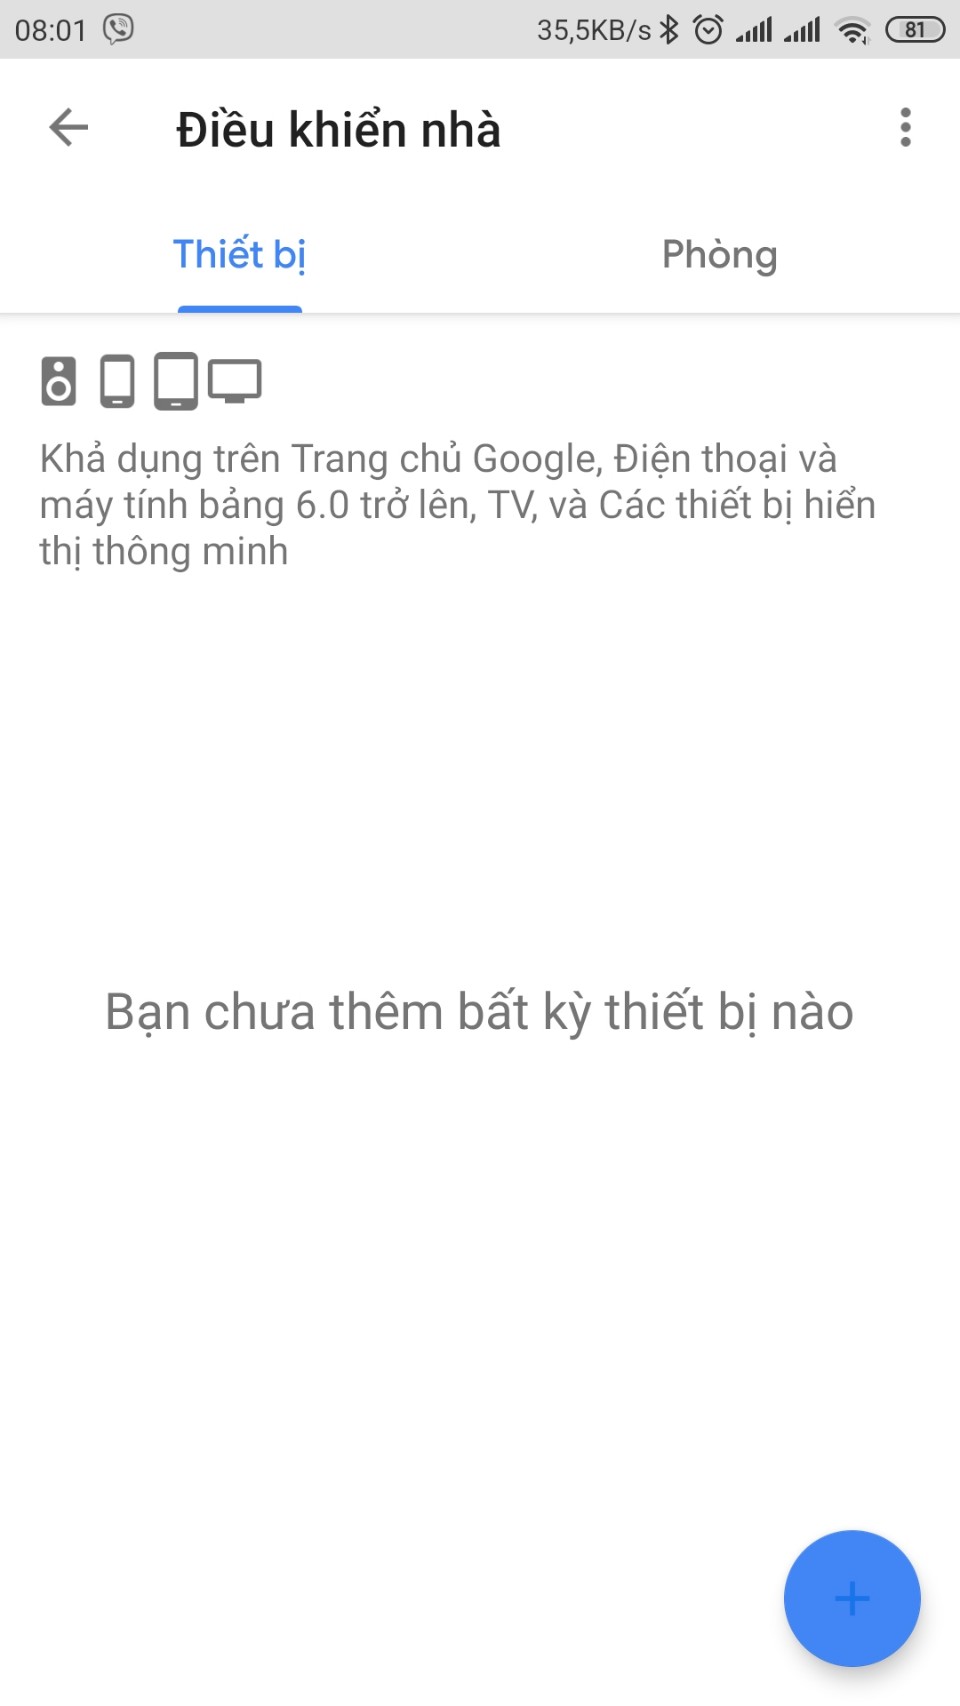 [Q/A] Xin chỉ giúp cách link Mi Home với Google Assistant